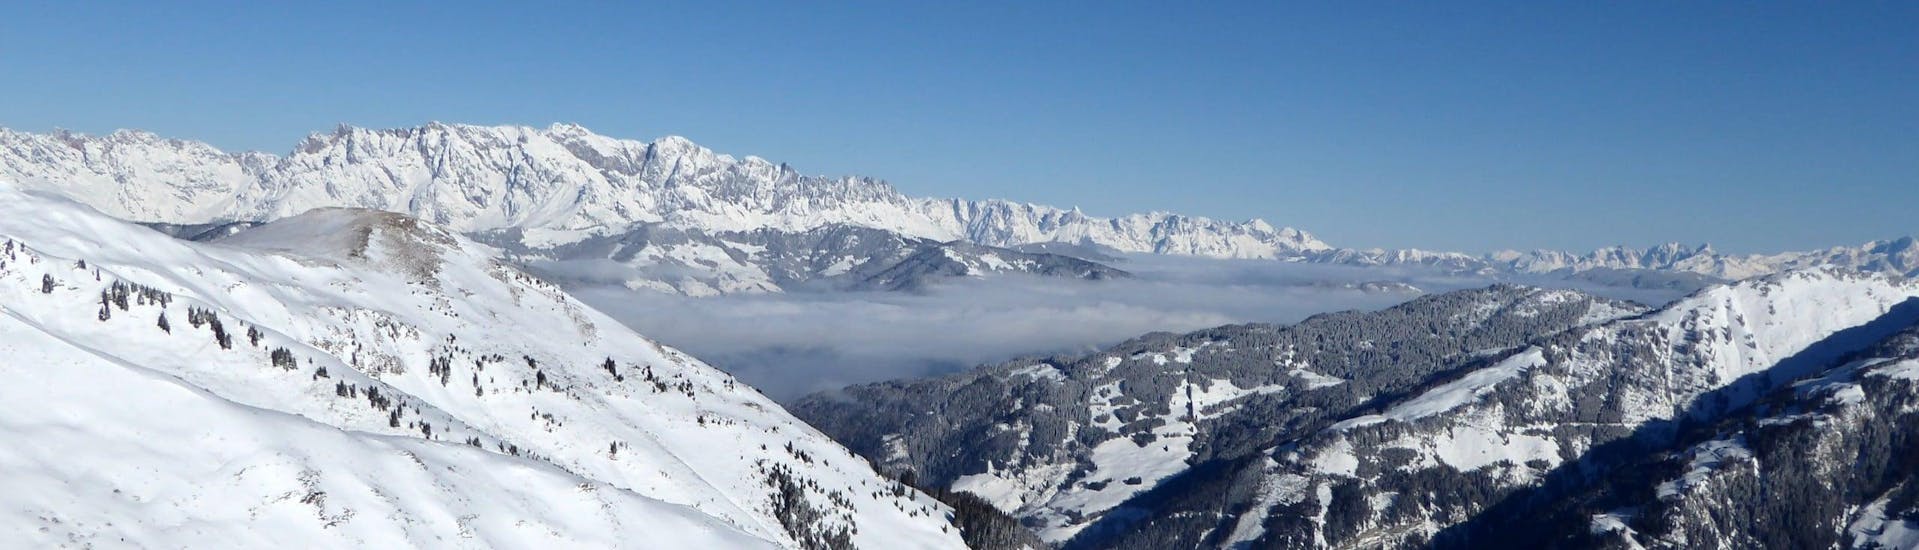 Ausblick auf die sonnige Berglandschaft beim Skifahren lernen mit den Skischulen im Skigebiet Rauris-Hochalmbahnen.